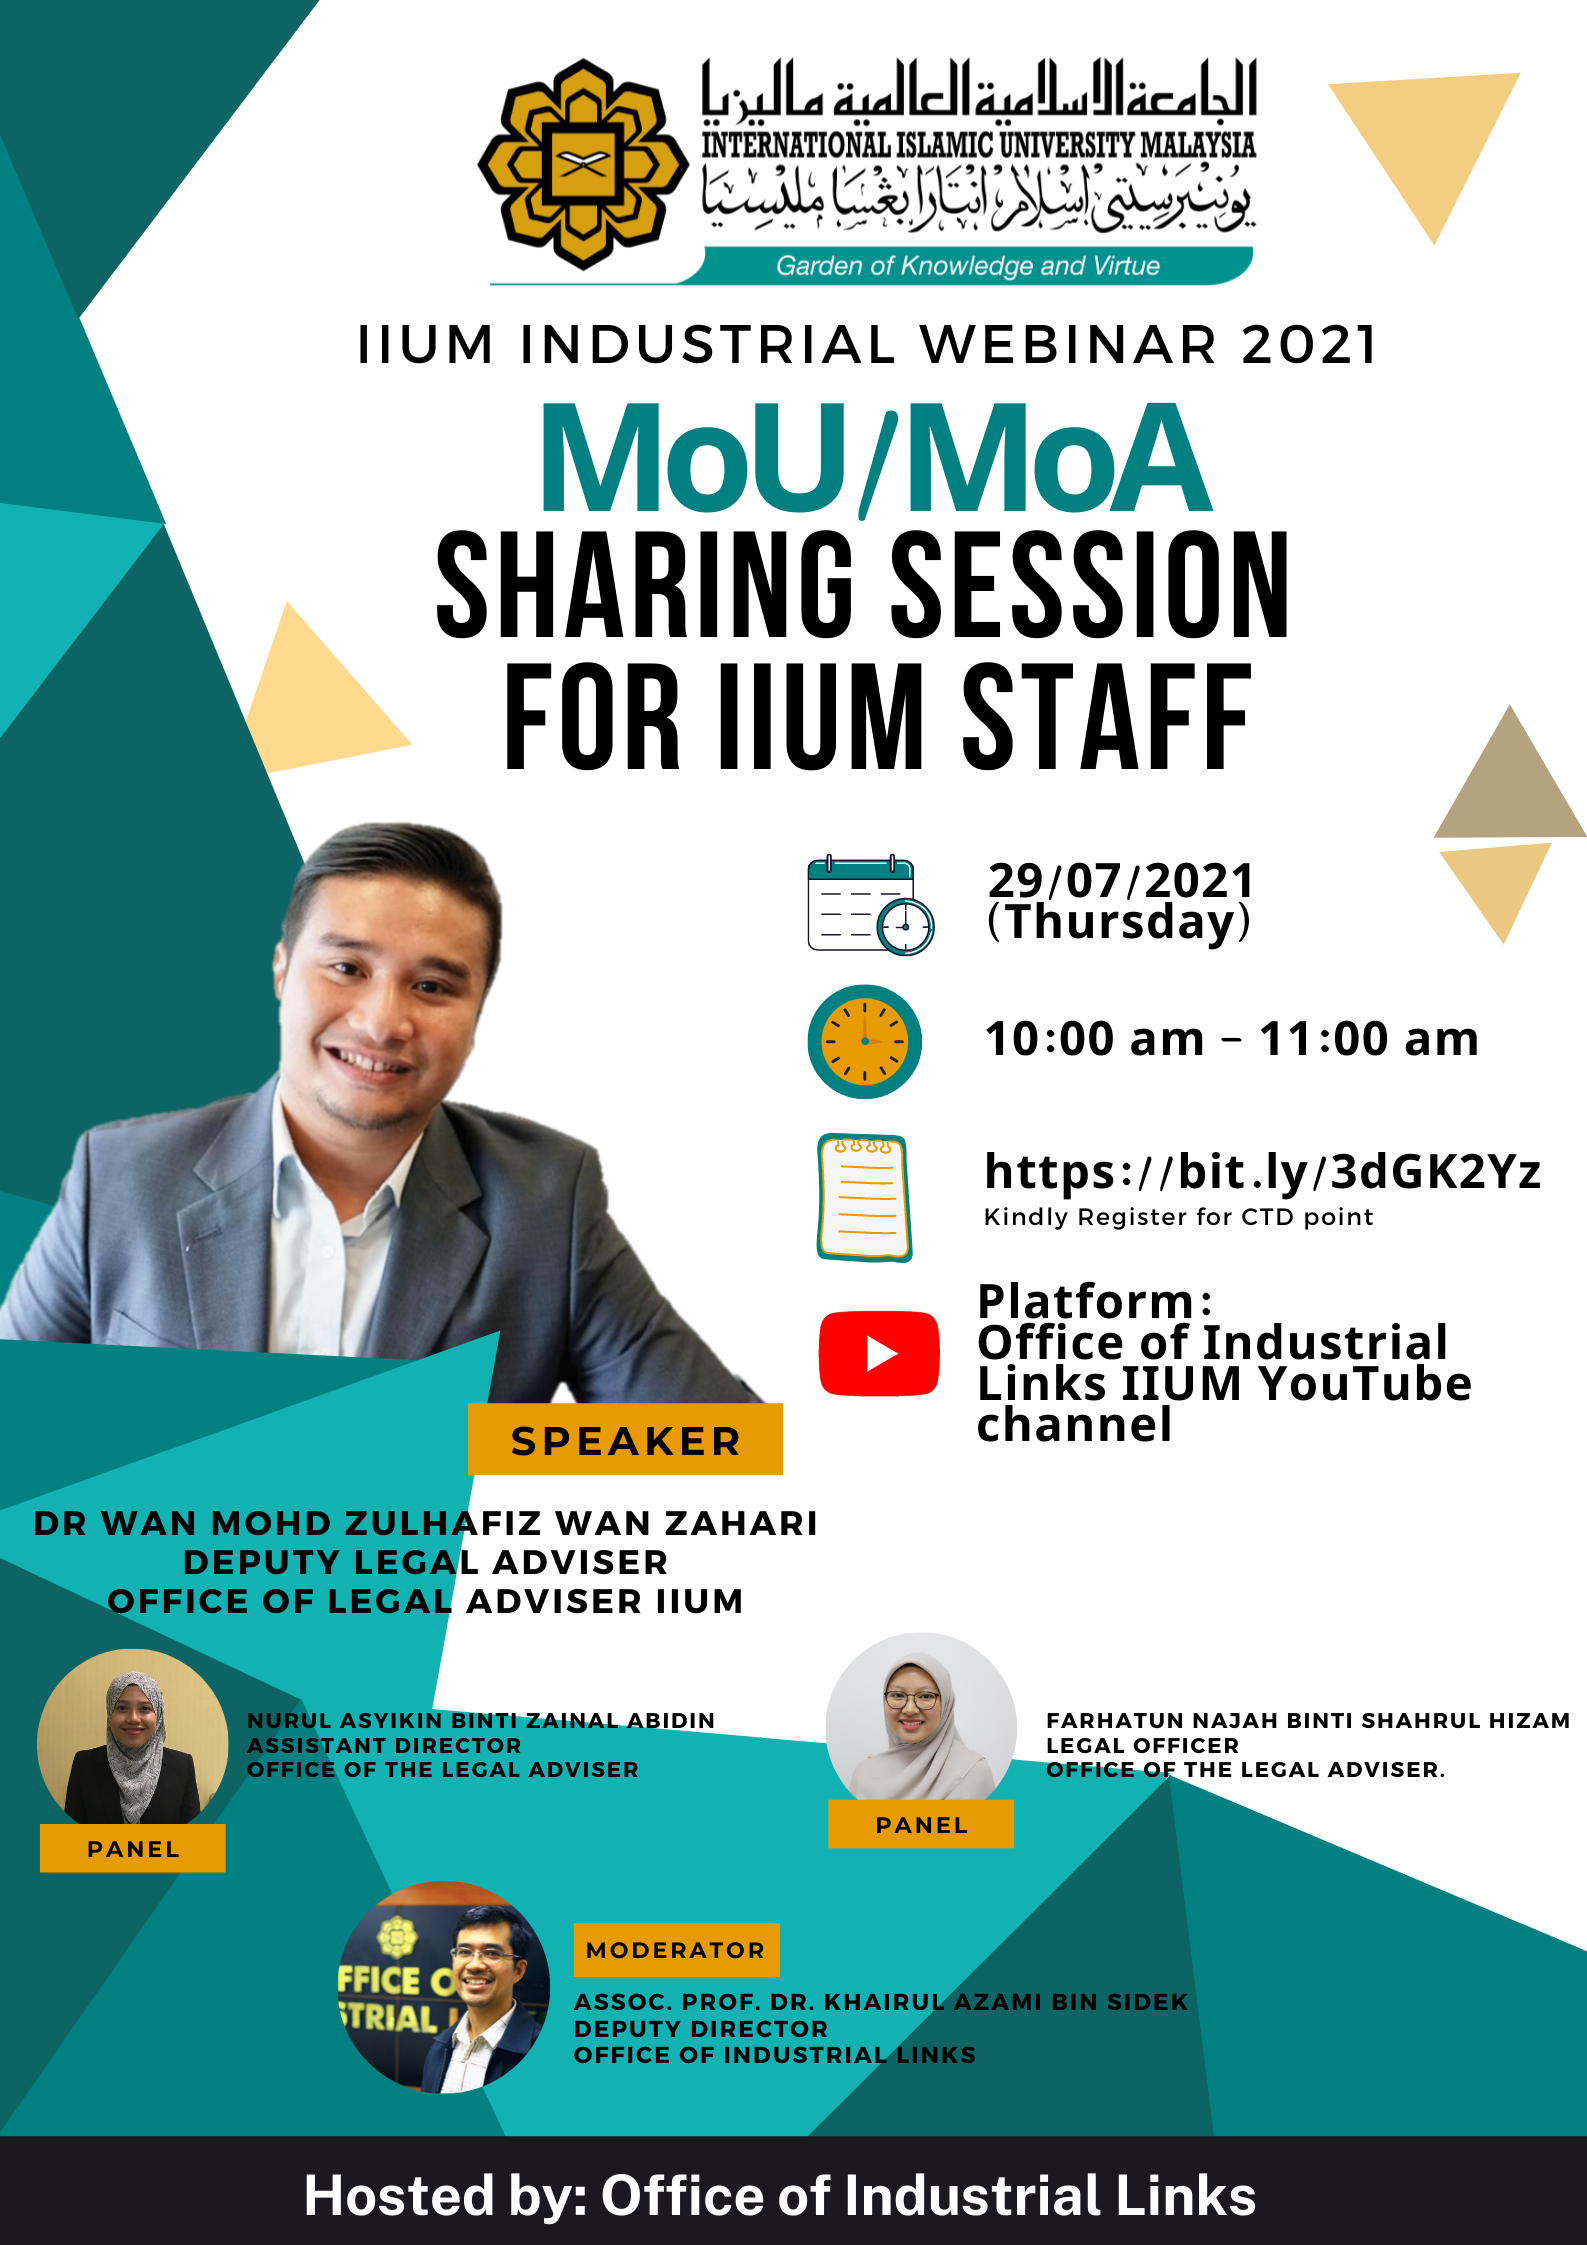 IIUM Industrial Webinar 2021: MoU/MoA Sharing Session for IIUM Staff